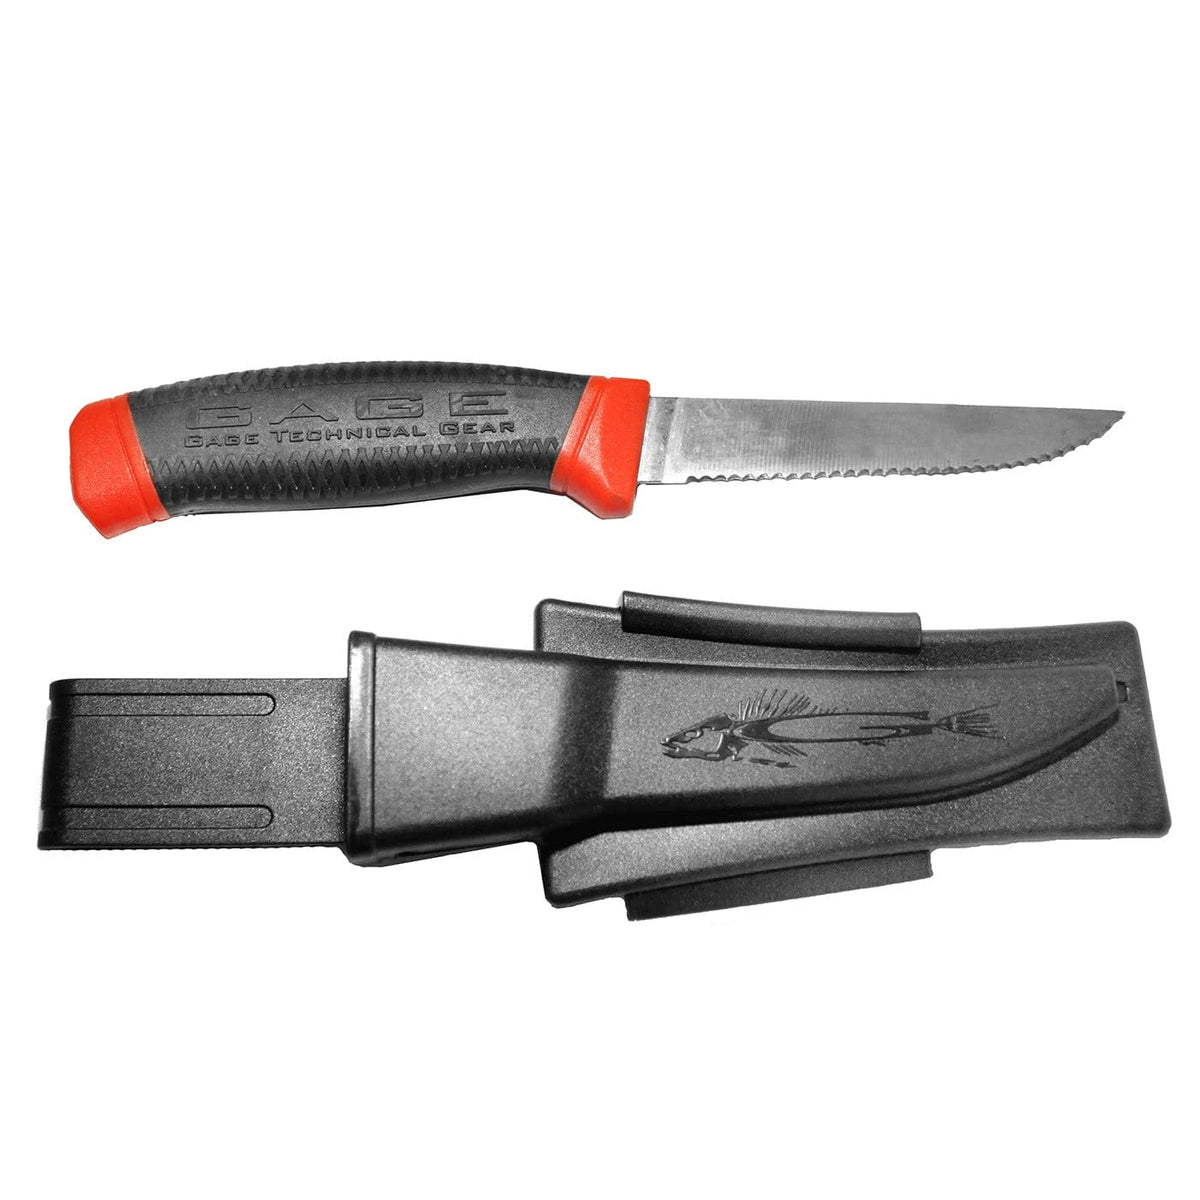 Gundens Gage Technical Deck Knife w/ Sheath